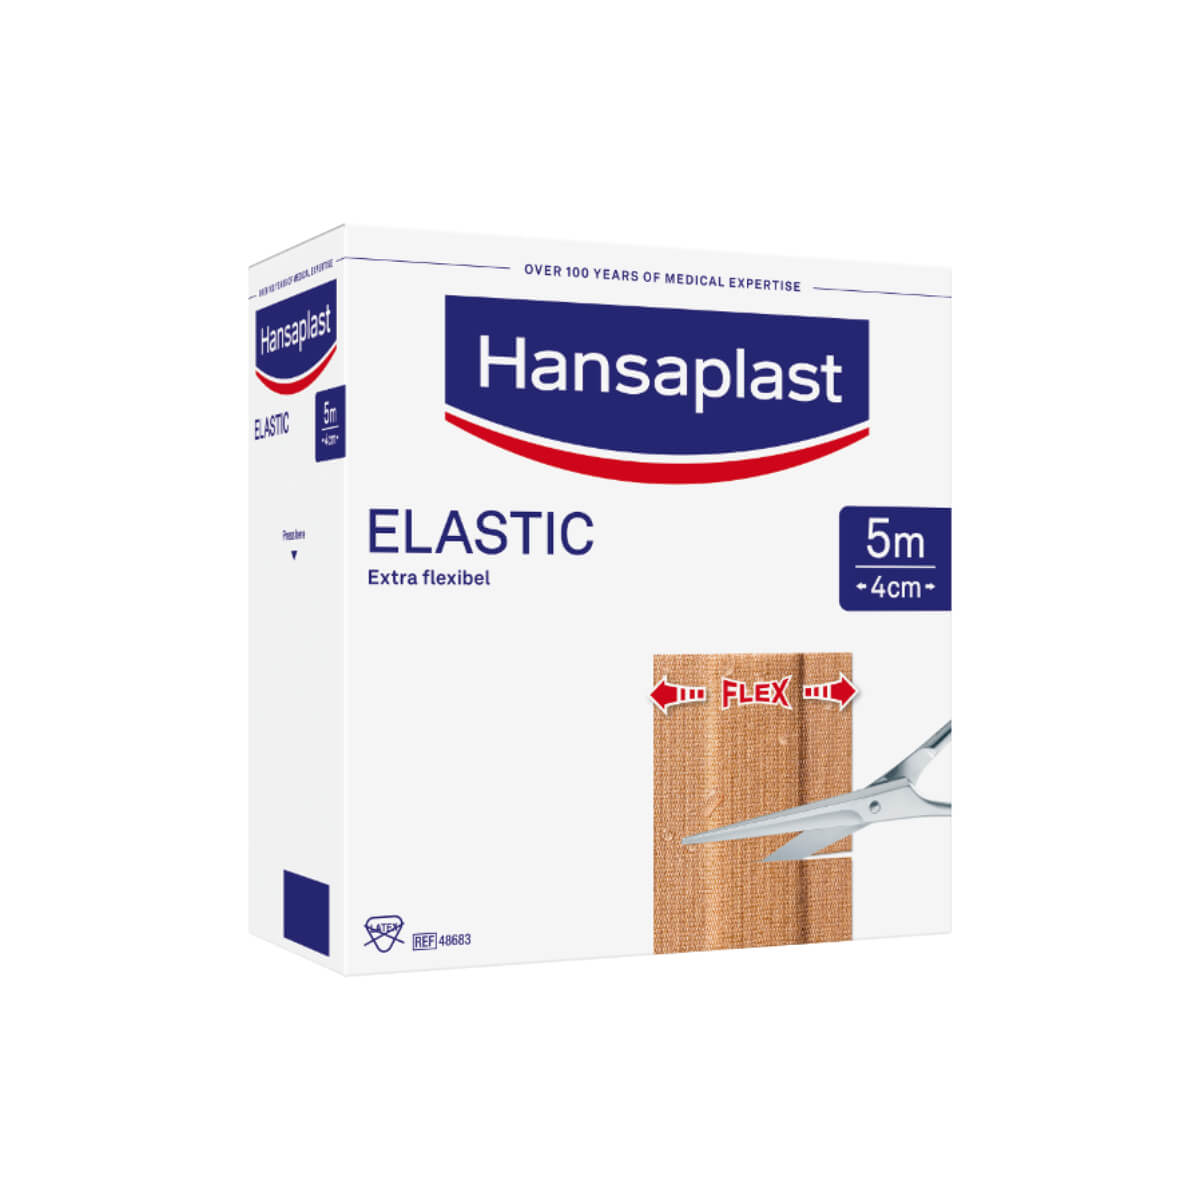 Finger Pflaster Elastic - Hansaplast